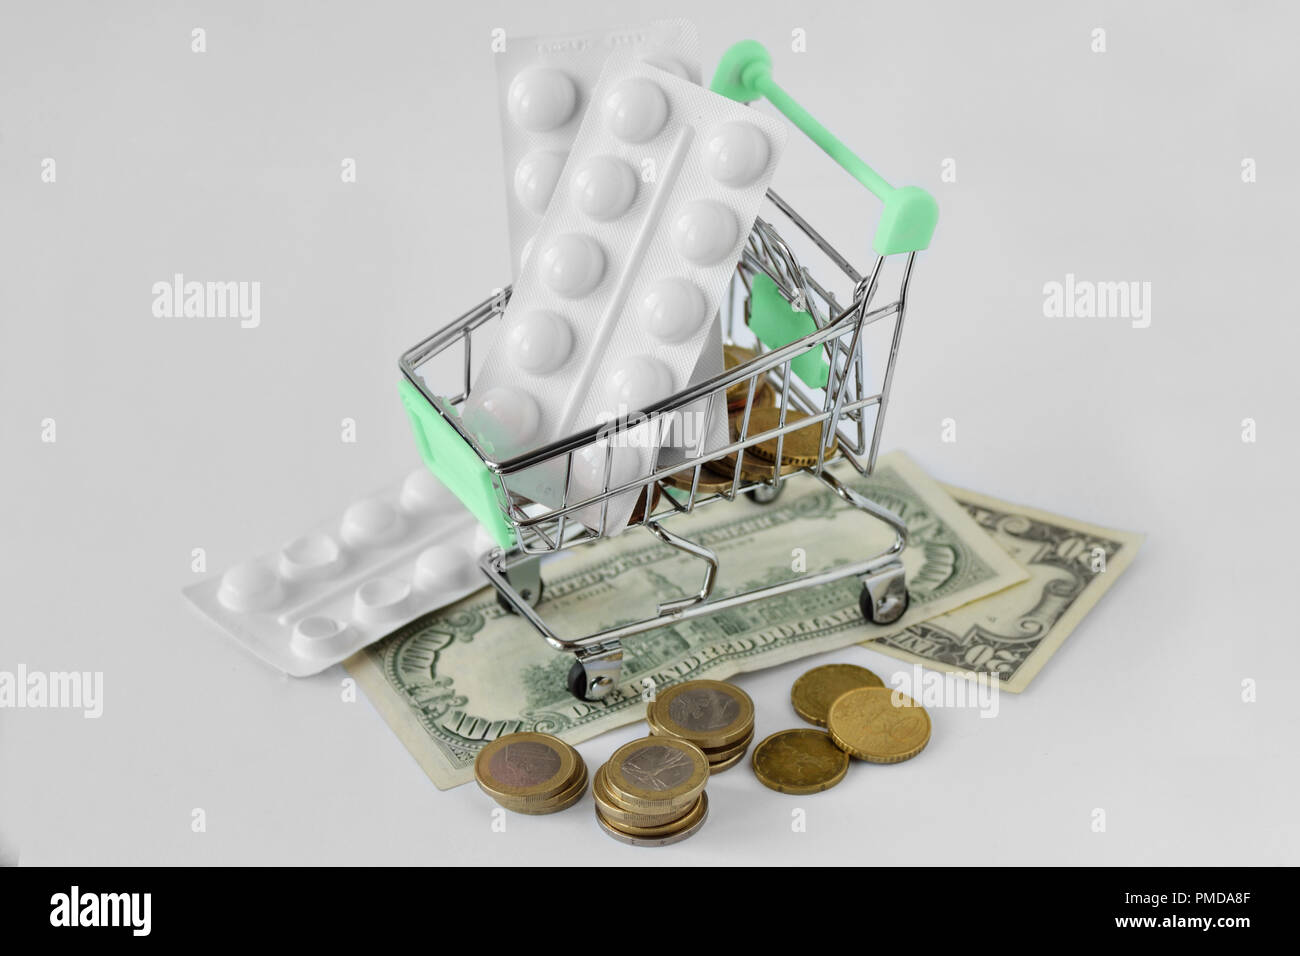 Carrello con pillole medicinali sul denaro - Pharmaceutical cost concept Foto Stock